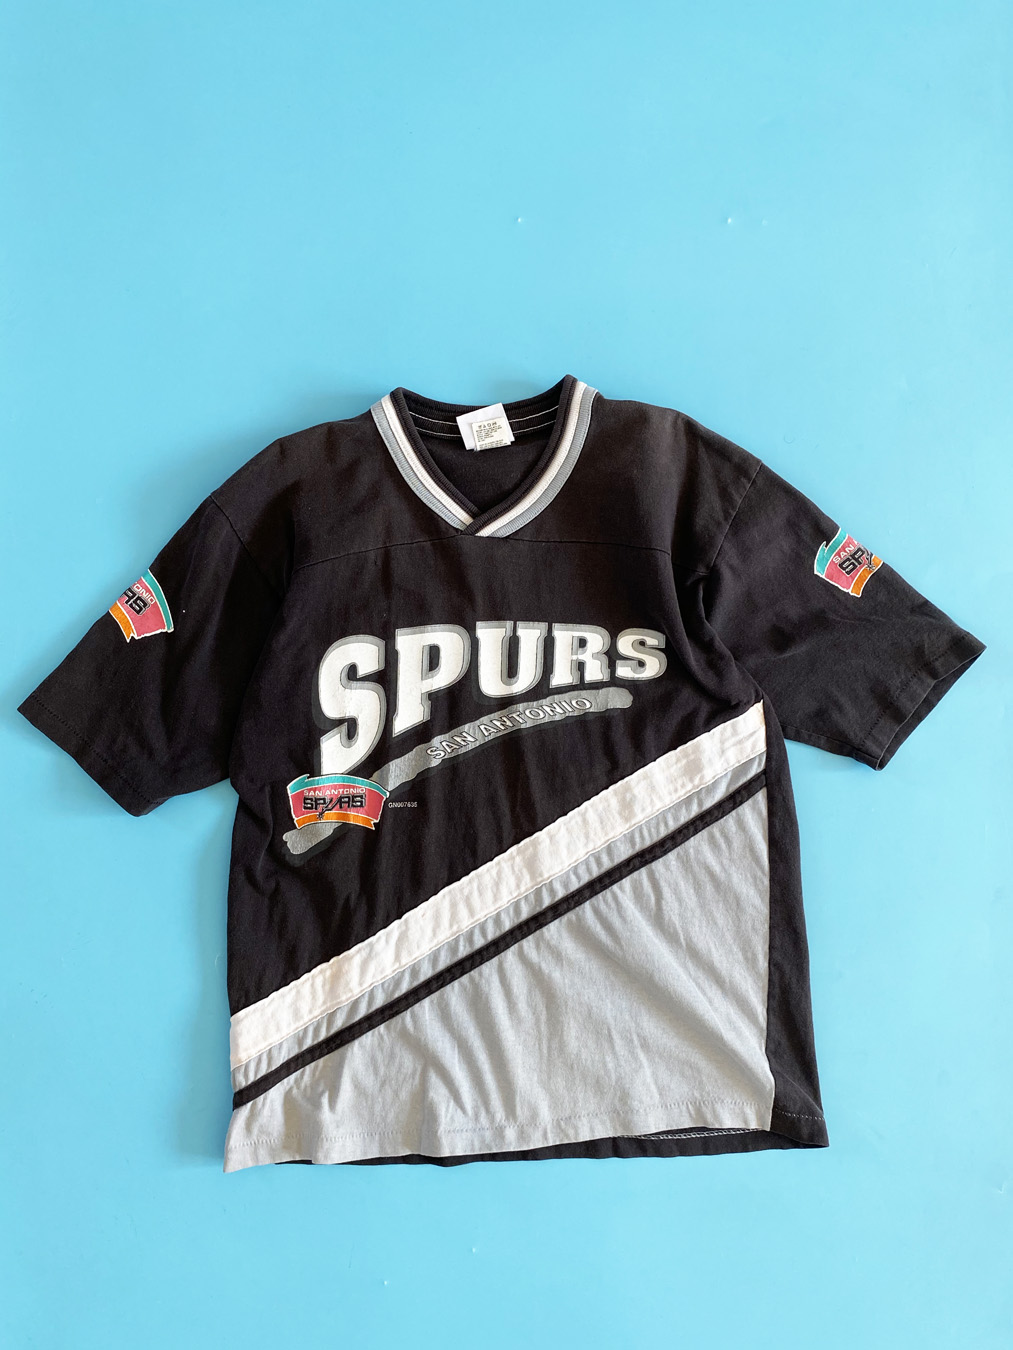 1990 spurs shirt